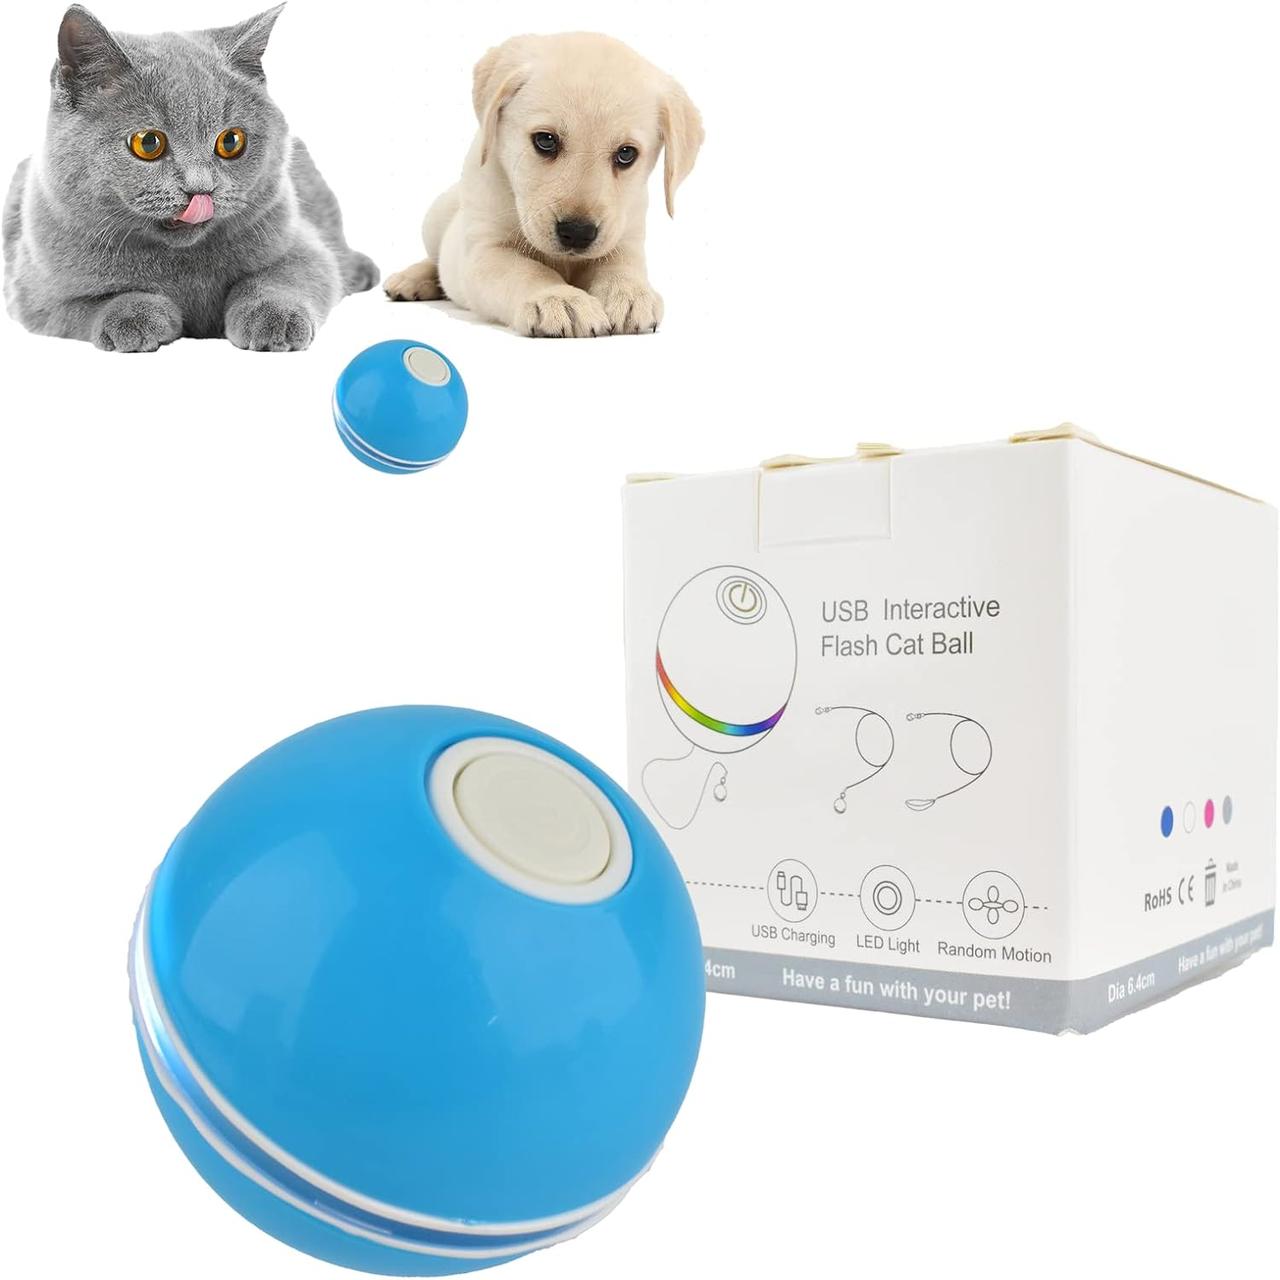 Інтерактивний м'яч для кішок, розумні іграшки для дорослих свійських кішок Petgravity, Amazon, Німеччина